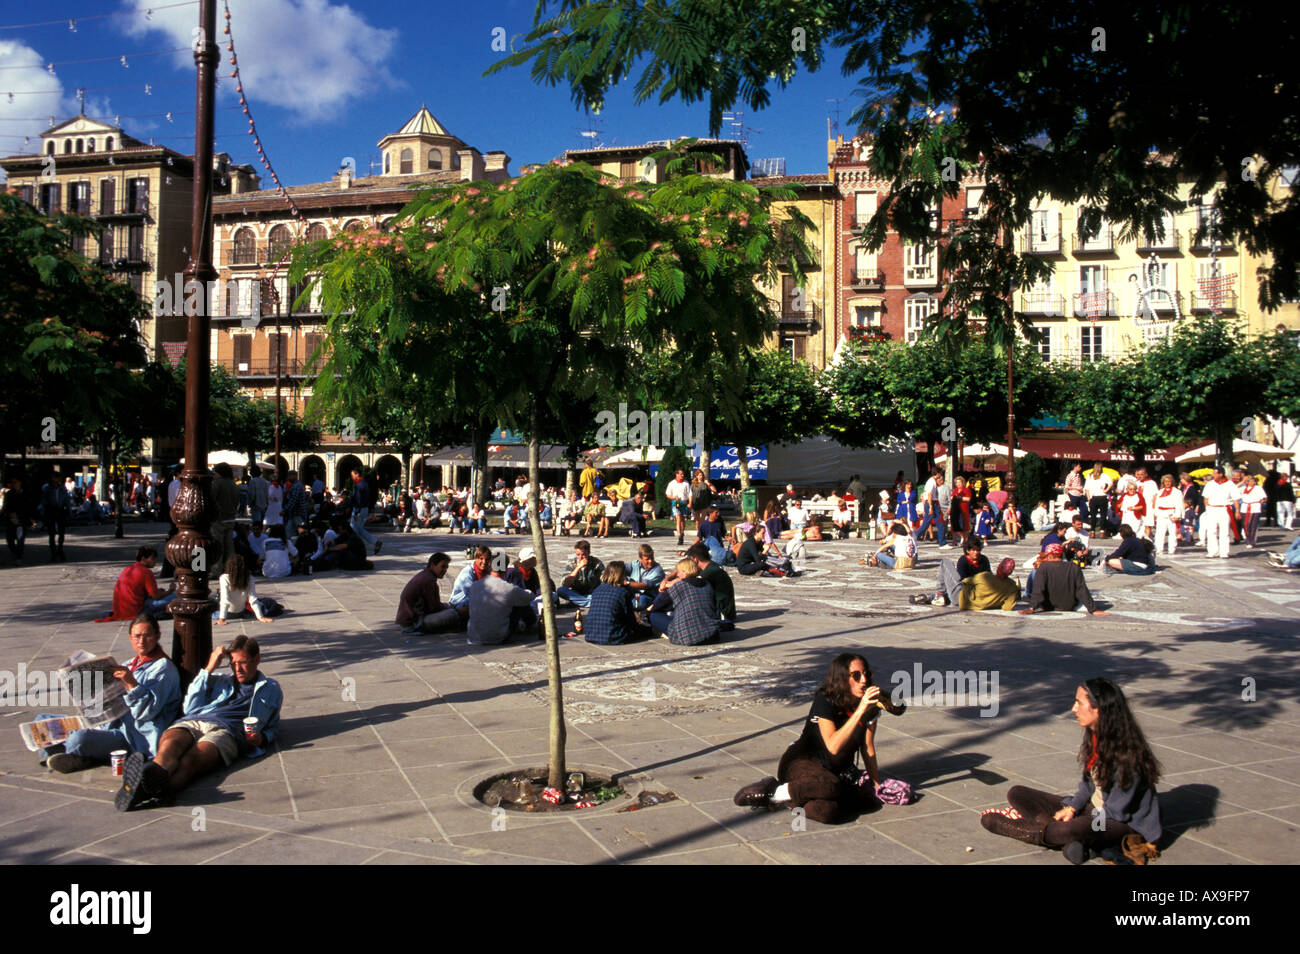 Leute sitzen herum, Plaza del Castillo, Fiesta de San Fermin, Pamplona, Navarra, Spanien Stockfoto